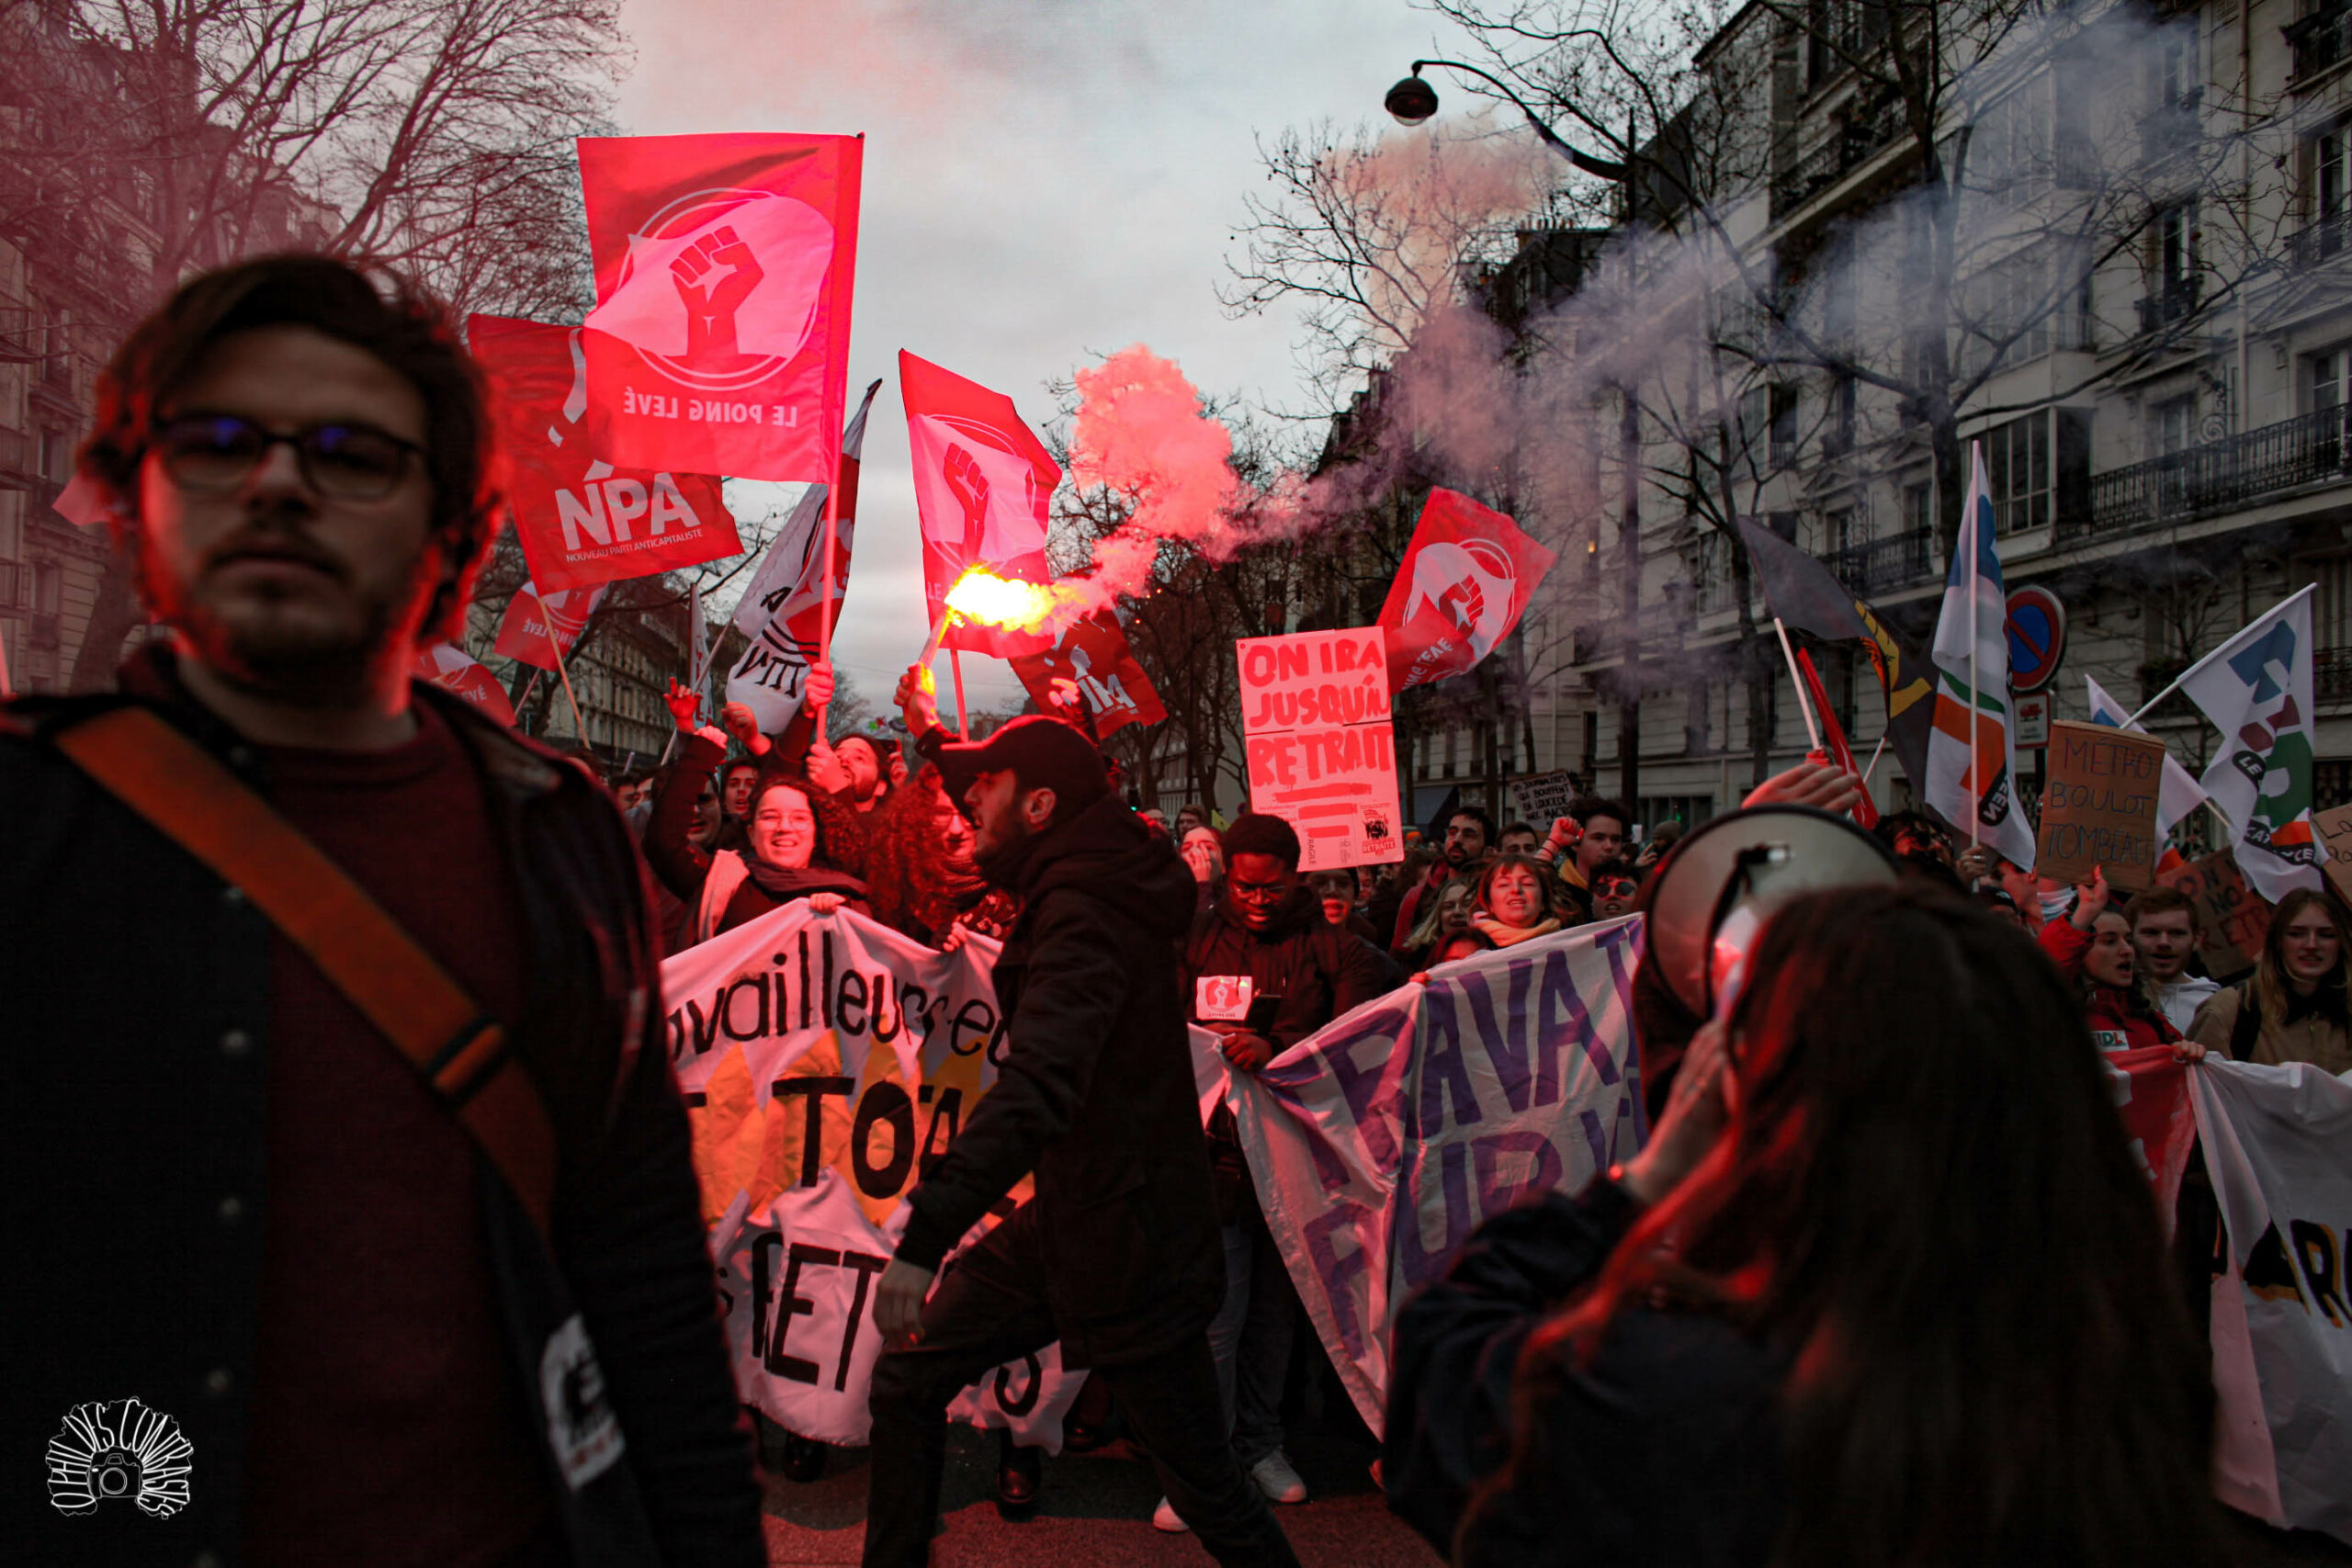 Potenziale und strategische Probleme des Aufstandes der Arbeiter:innenklasse in Frankreich